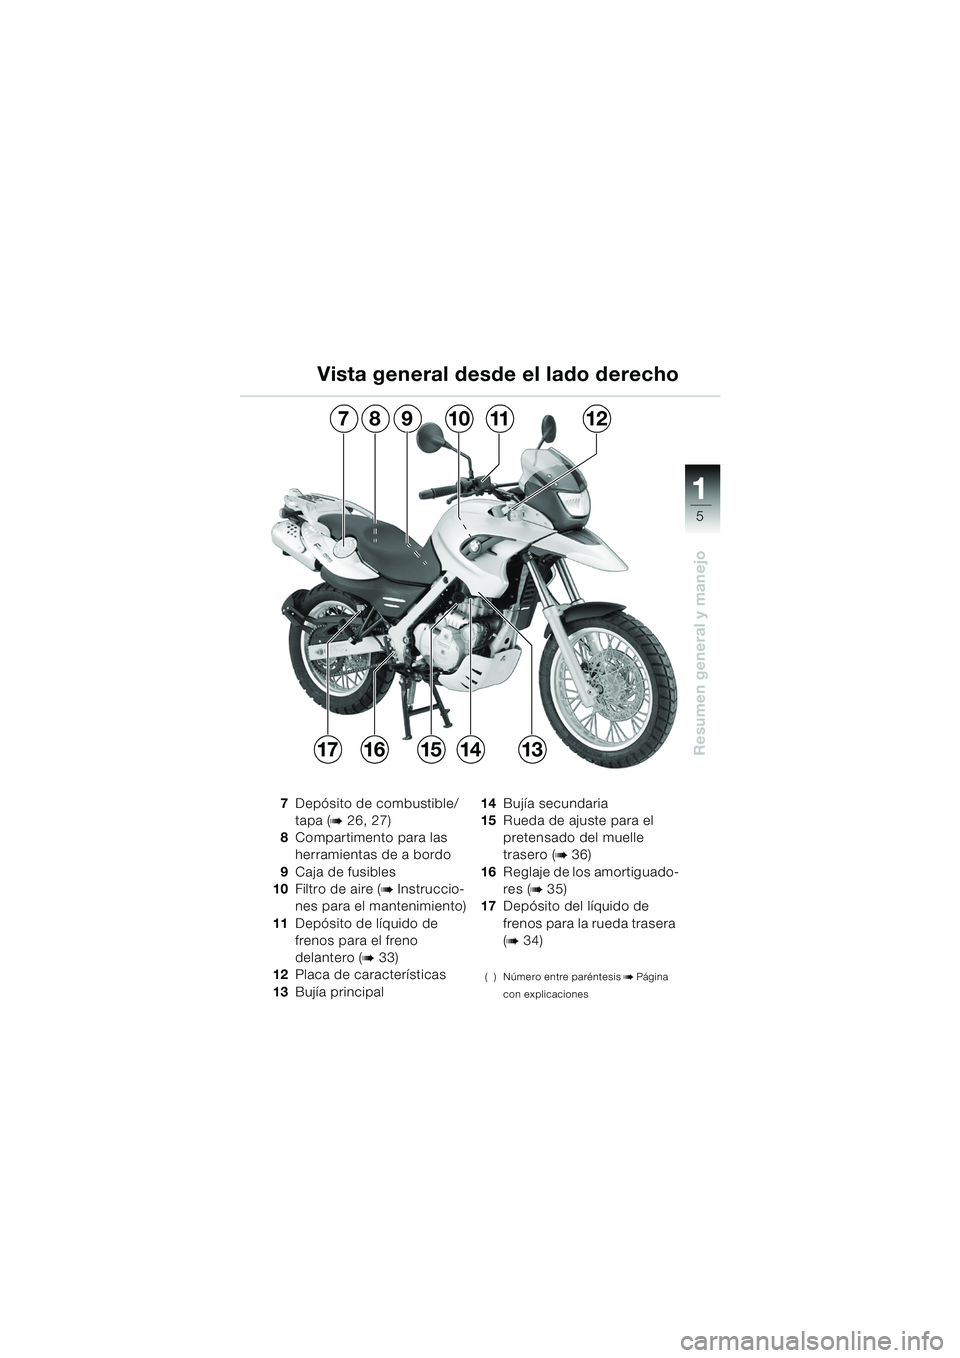 BMW MOTORRAD F 650 GS 2003  Manual de instrucciones (in Spanish) 111
5
Resumen general y manejo
Vista general desde el lado derecho
7Depósito de combustible/
tapa (
b 26, 27)
8 Compartimento para las 
herramientas de a bordo
9 Caja de fusibles
10 Filtro de aire (
